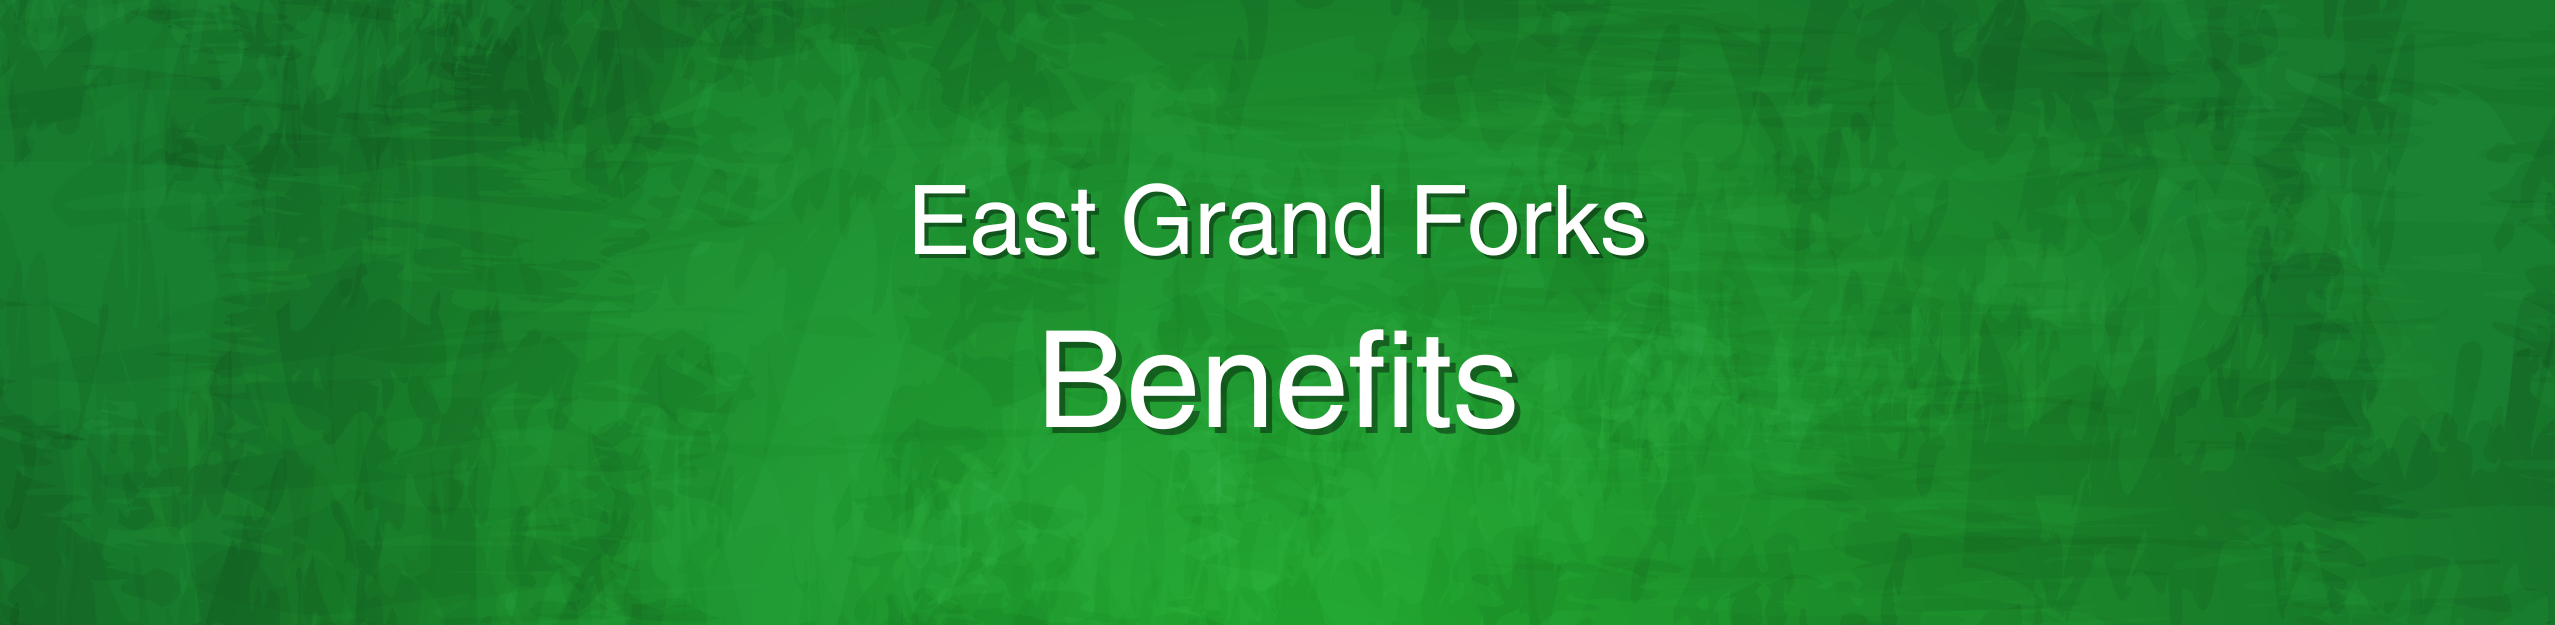 East Grand Forks Benefits